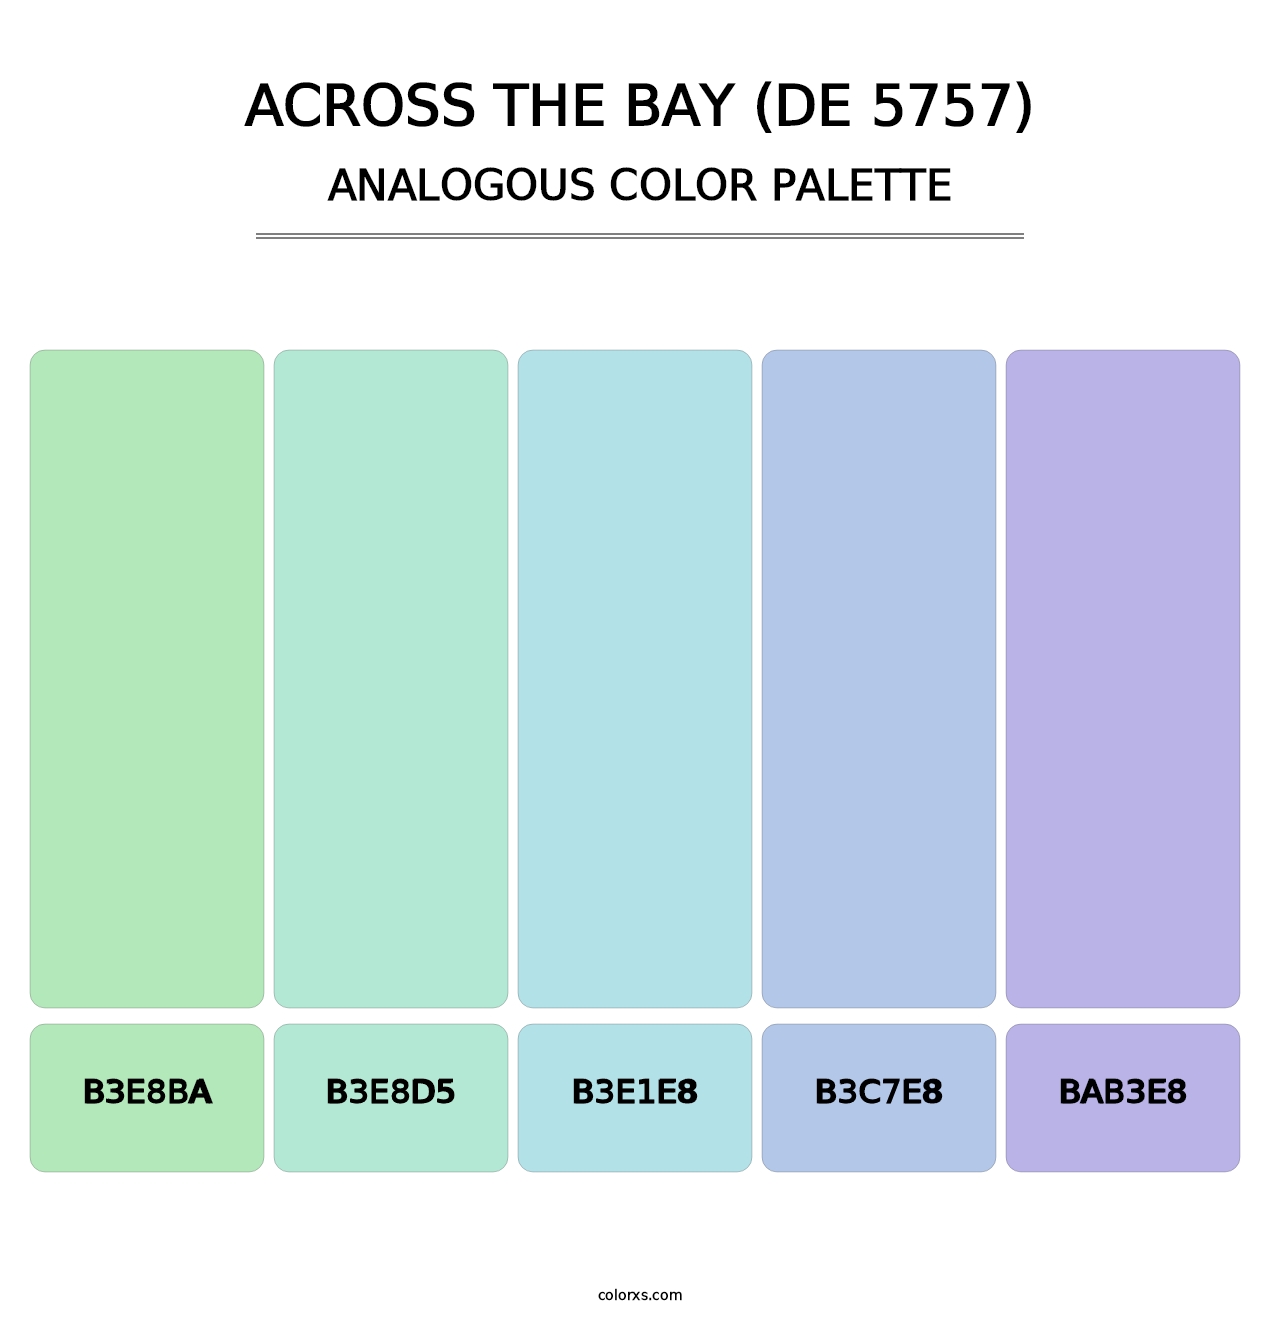 Across the Bay (DE 5757) - Analogous Color Palette